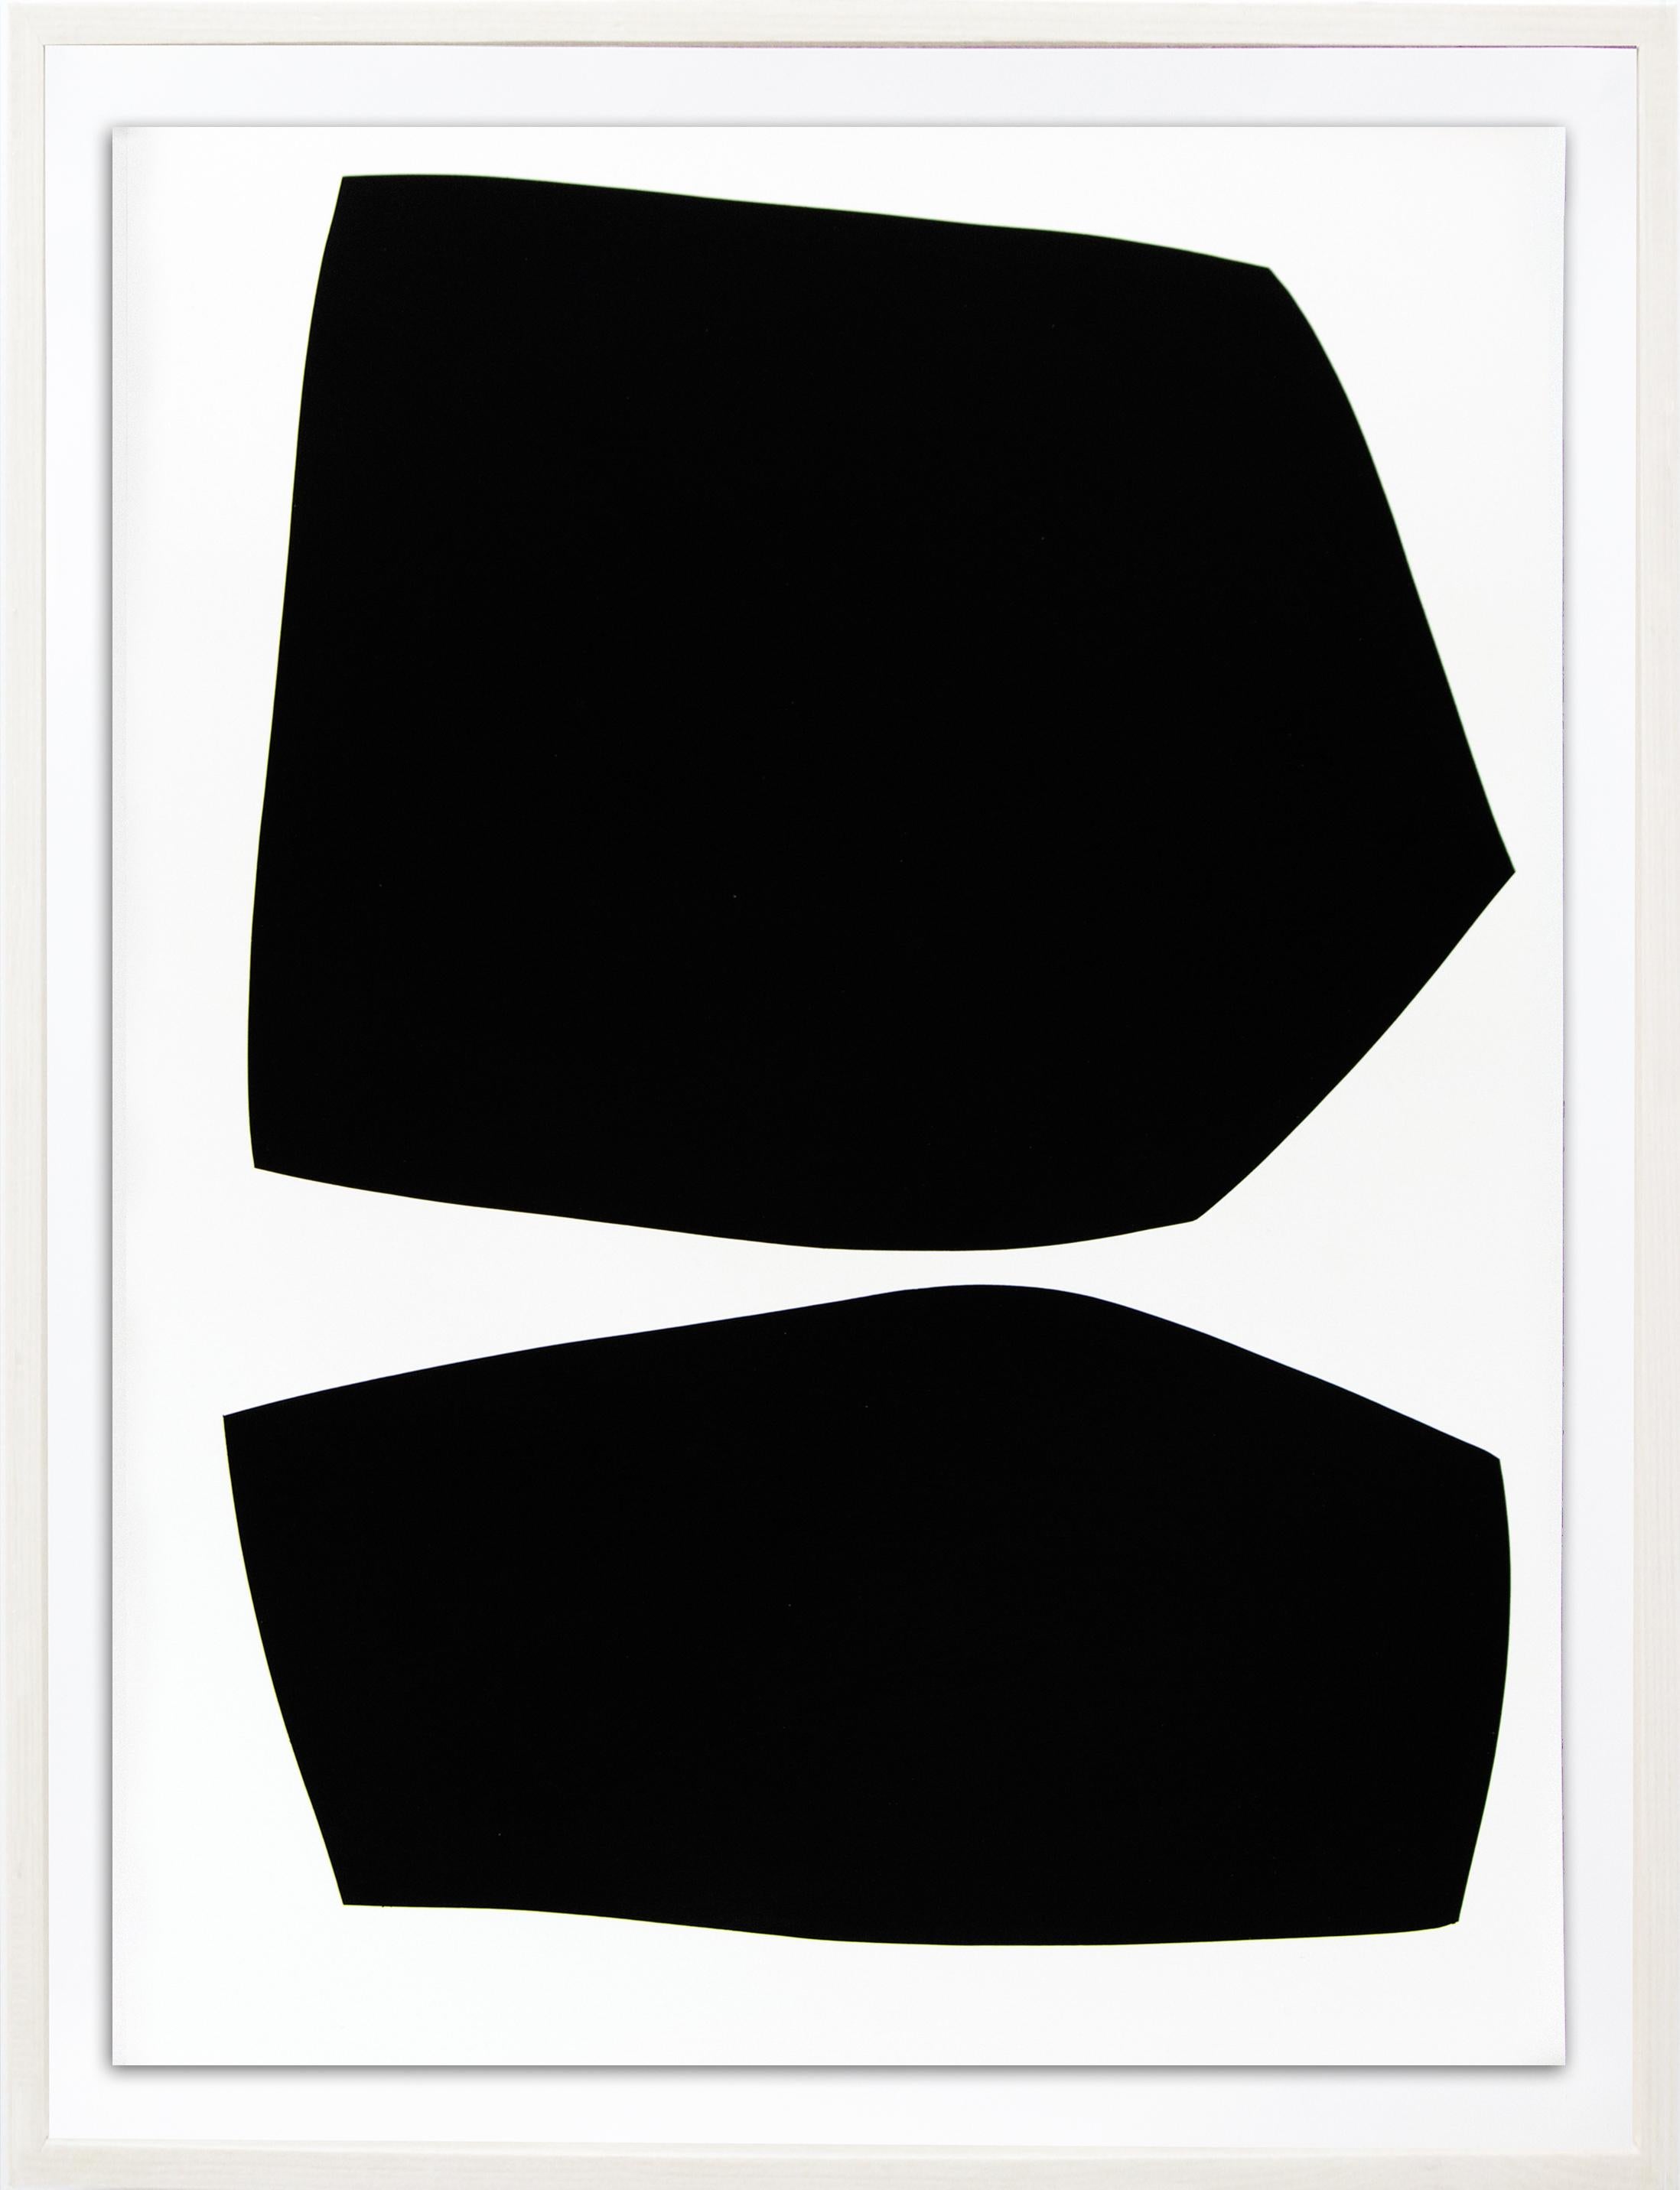 Suite de huit tirages (édition 9/20) - série de formes abstraites sur papier - Gris Abstract Print par Aron Hill